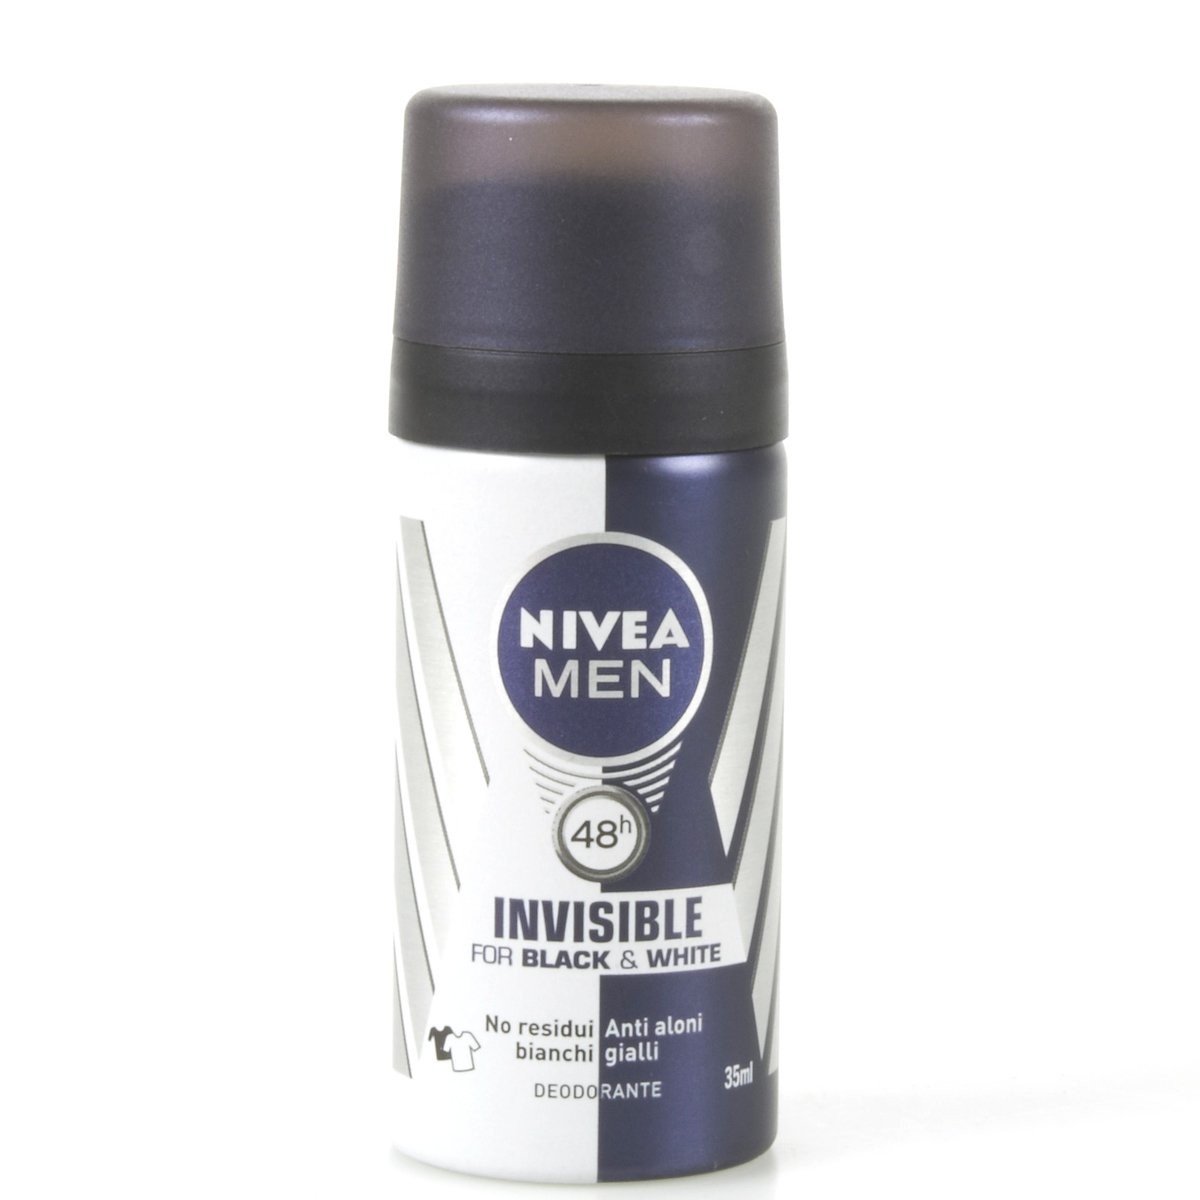 Nivea Men Deodorante Invisible Black & White